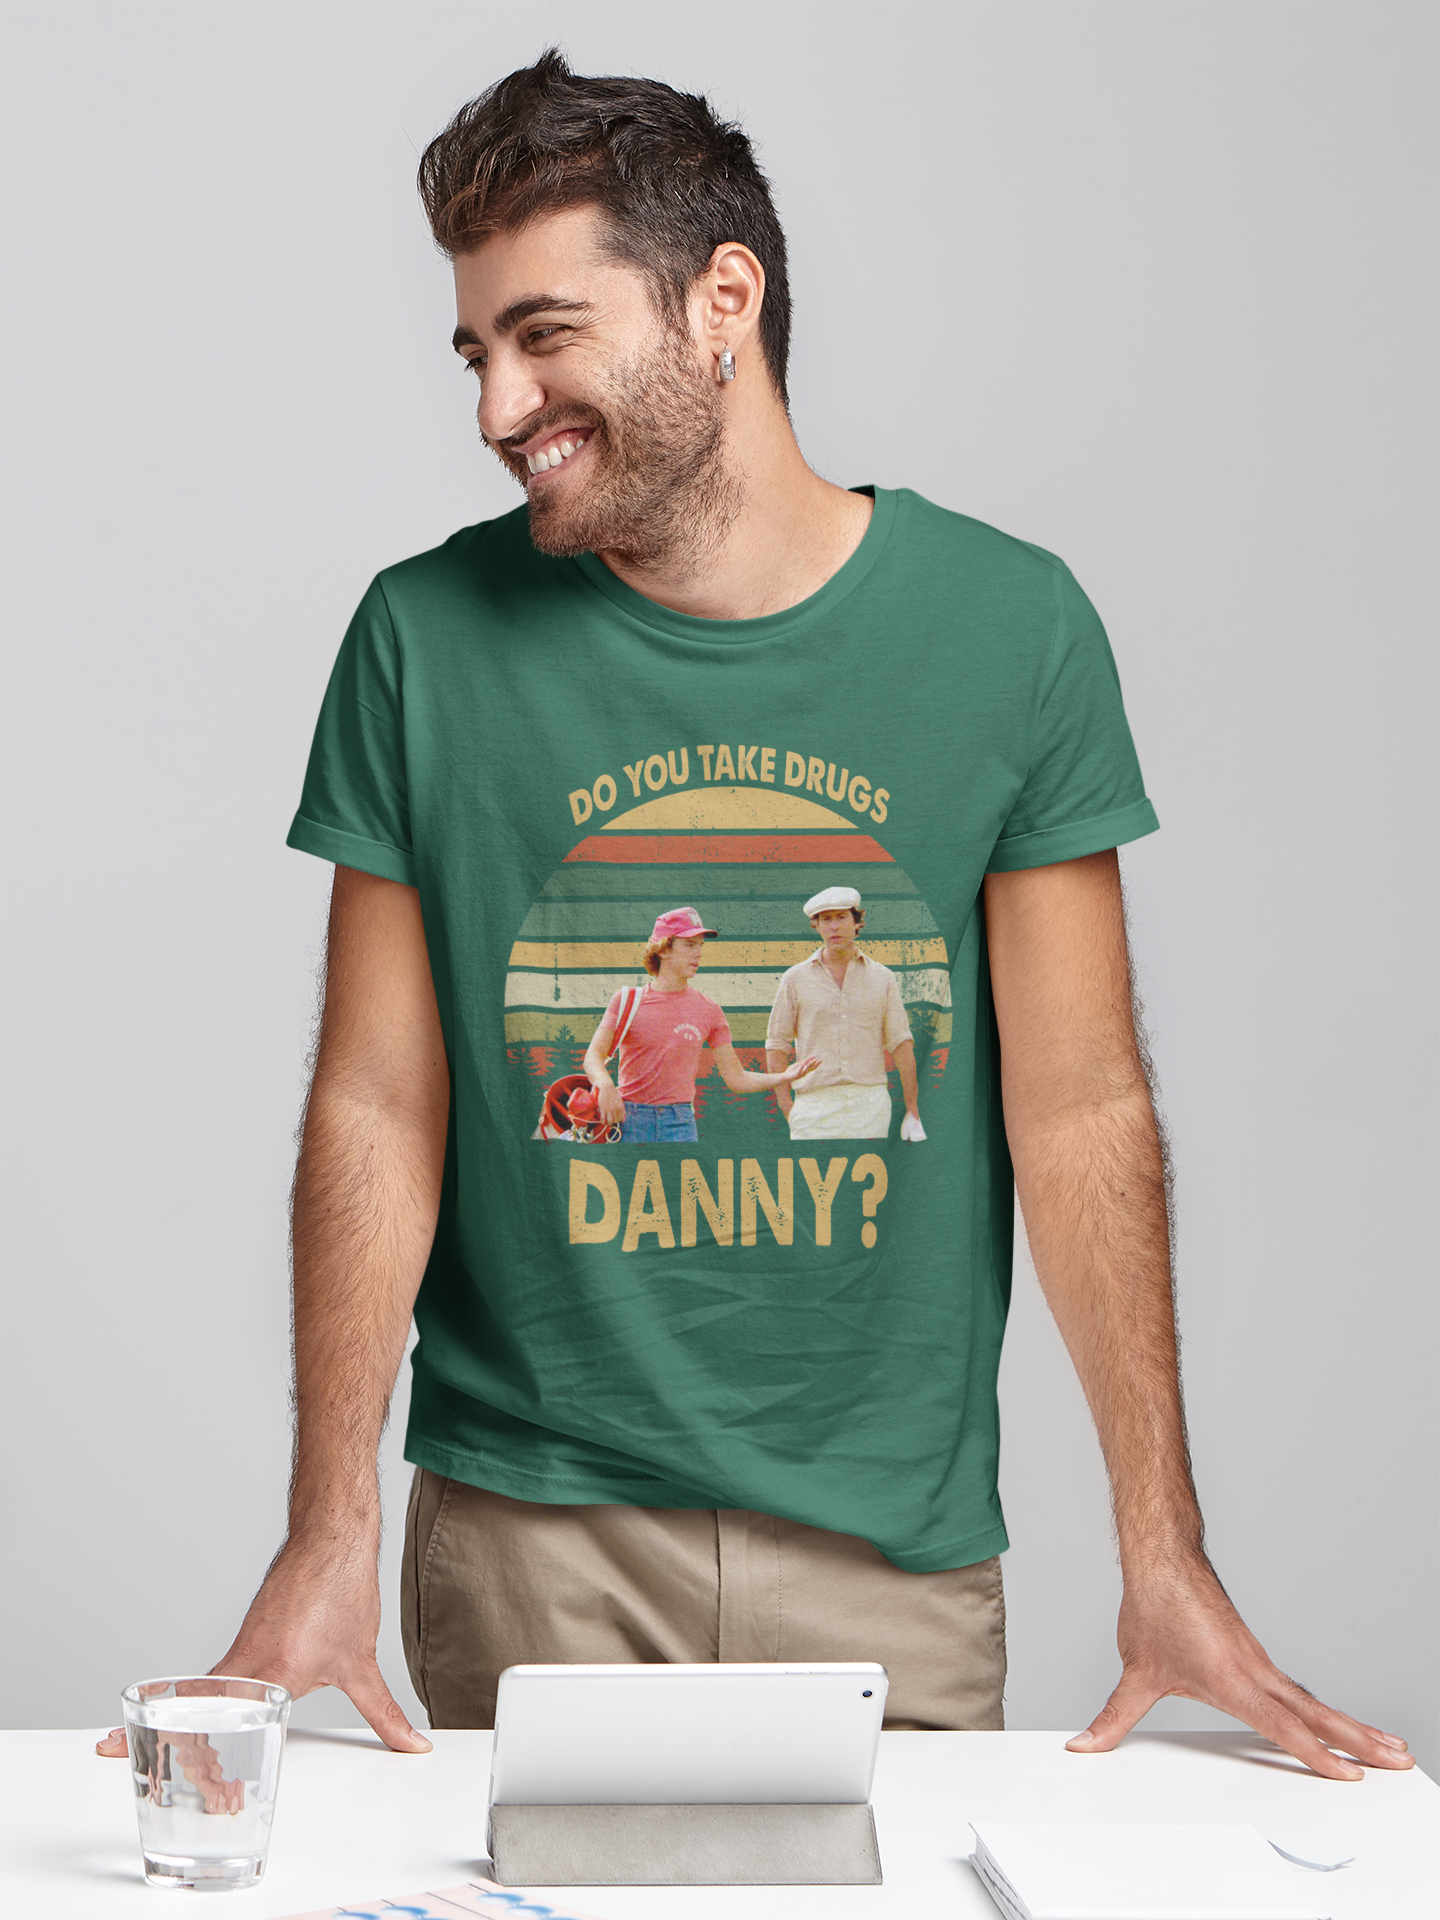 Caddyshack Movie T Shirt, Ty Webb Danny Noonan T Shirt, Do You Take Drugs Danny Tshirt